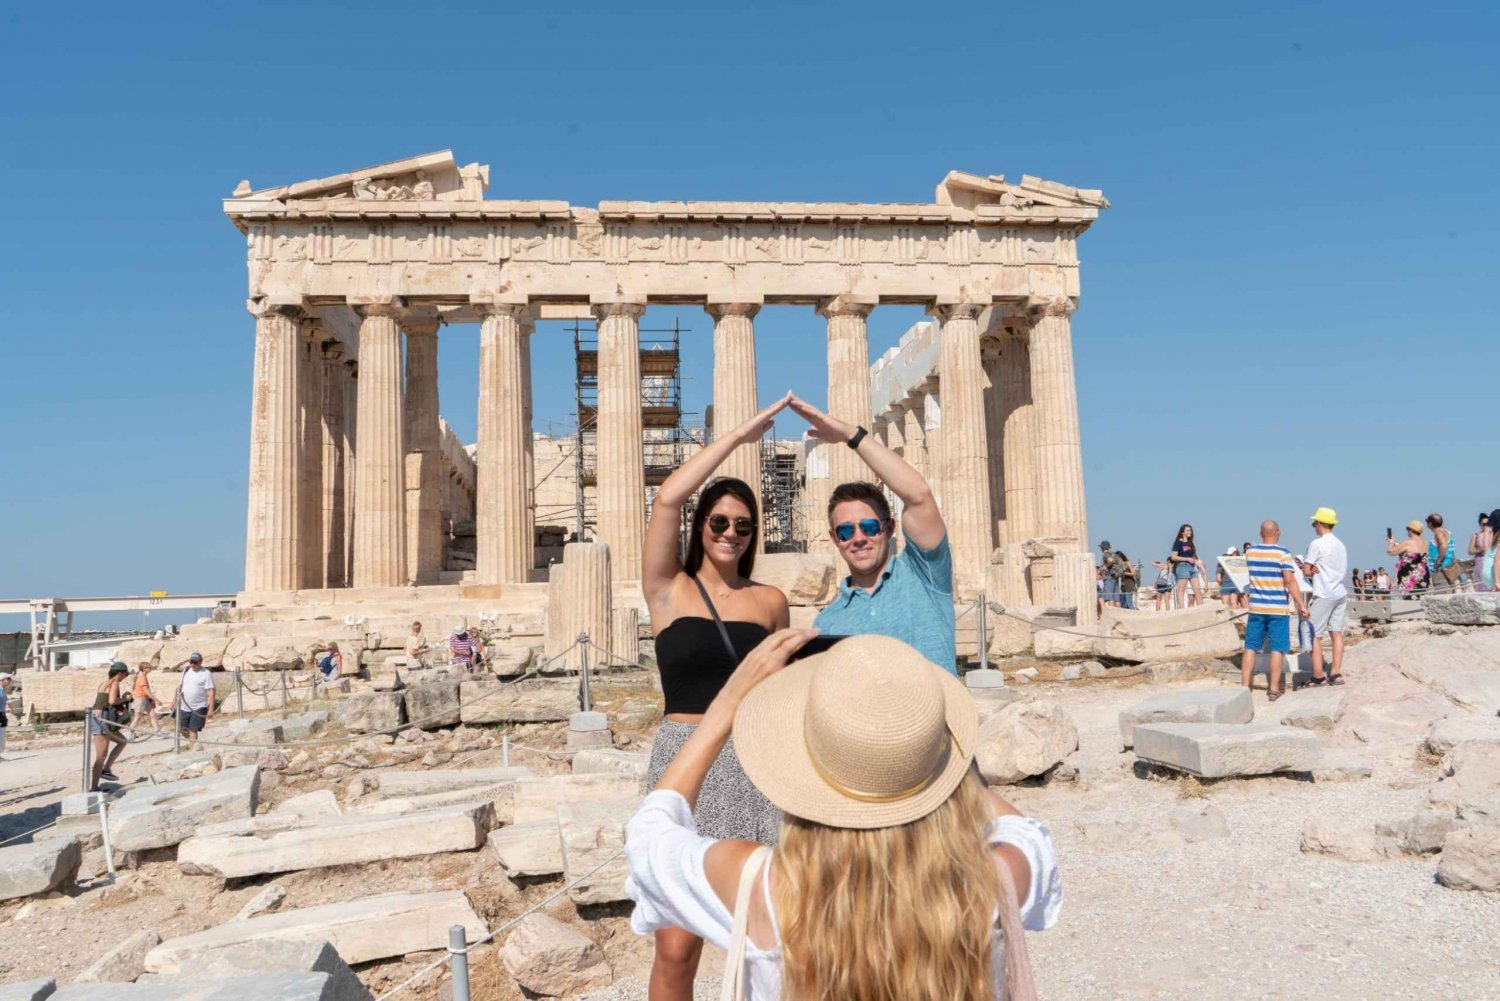 Atene: tour privato dell'Acropoli segreta